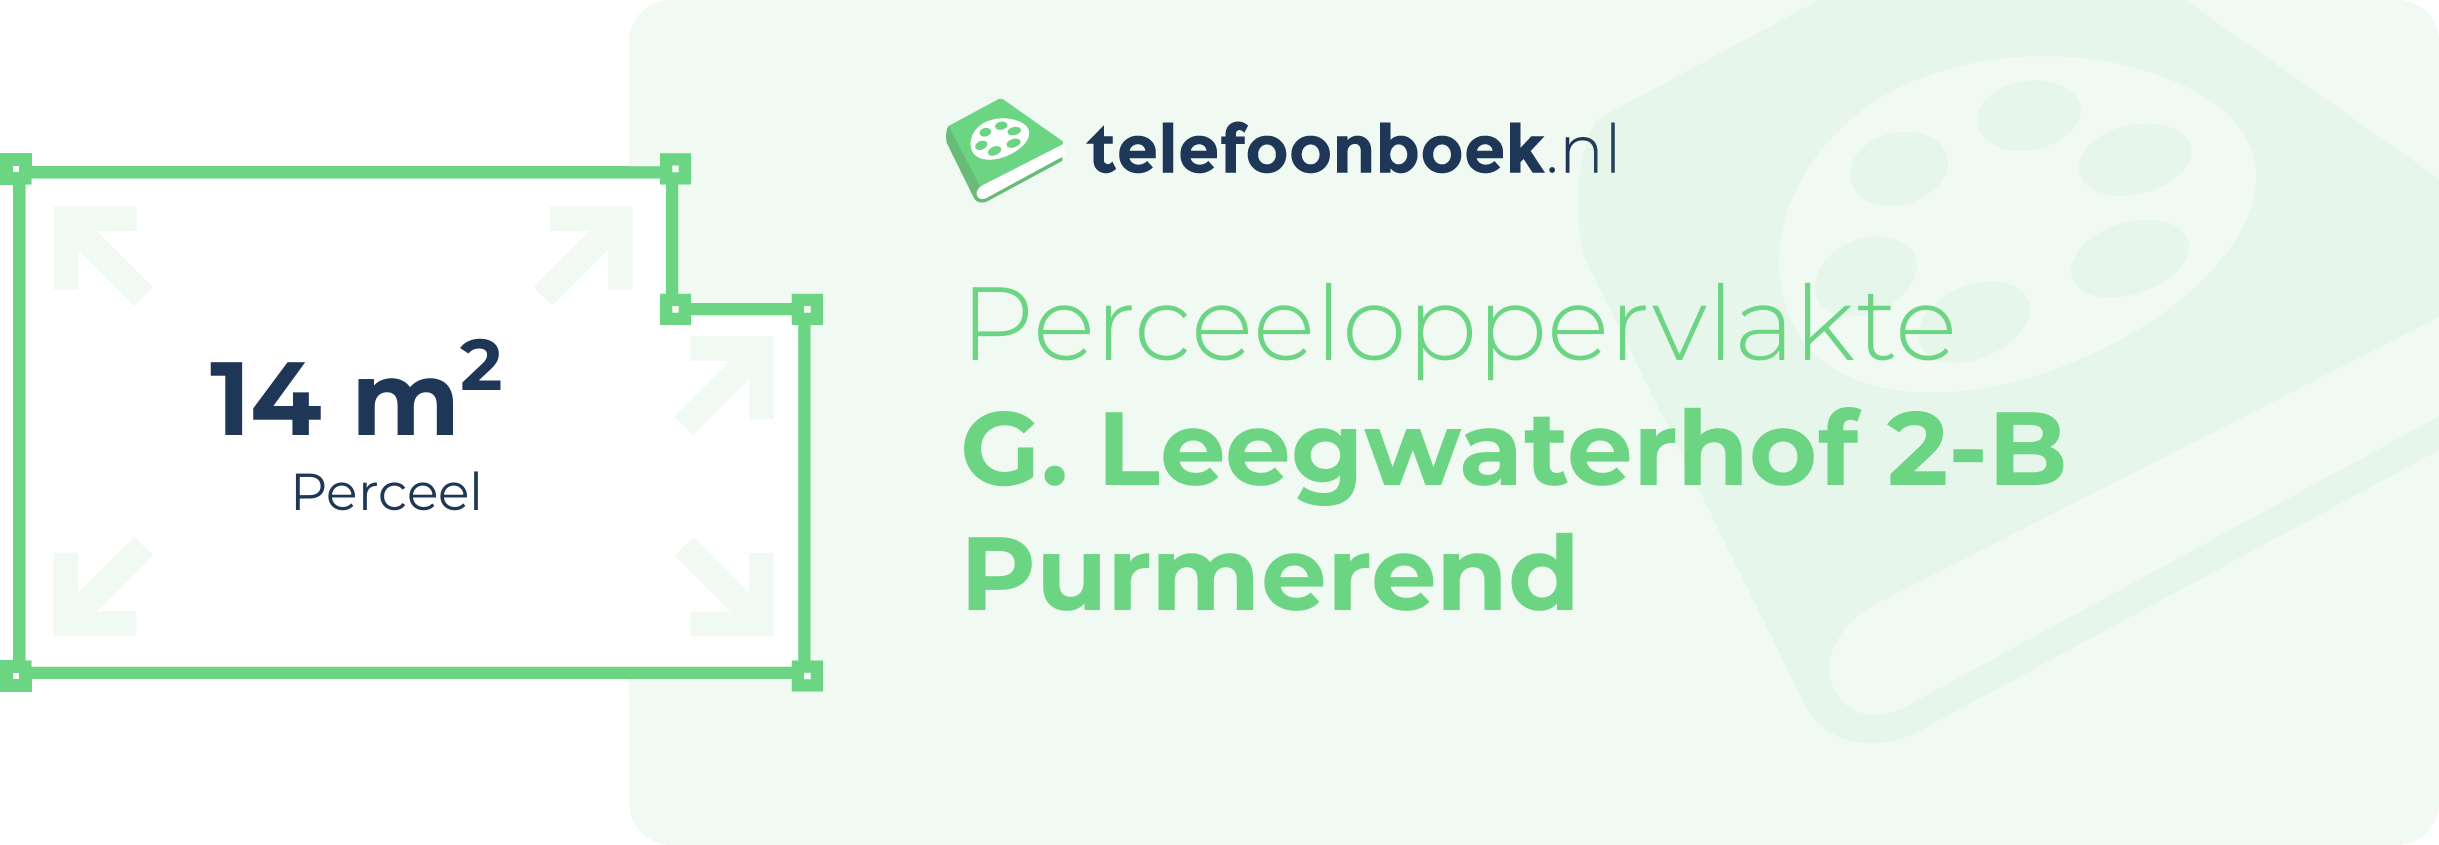 Perceeloppervlakte G. Leegwaterhof 2-B Purmerend